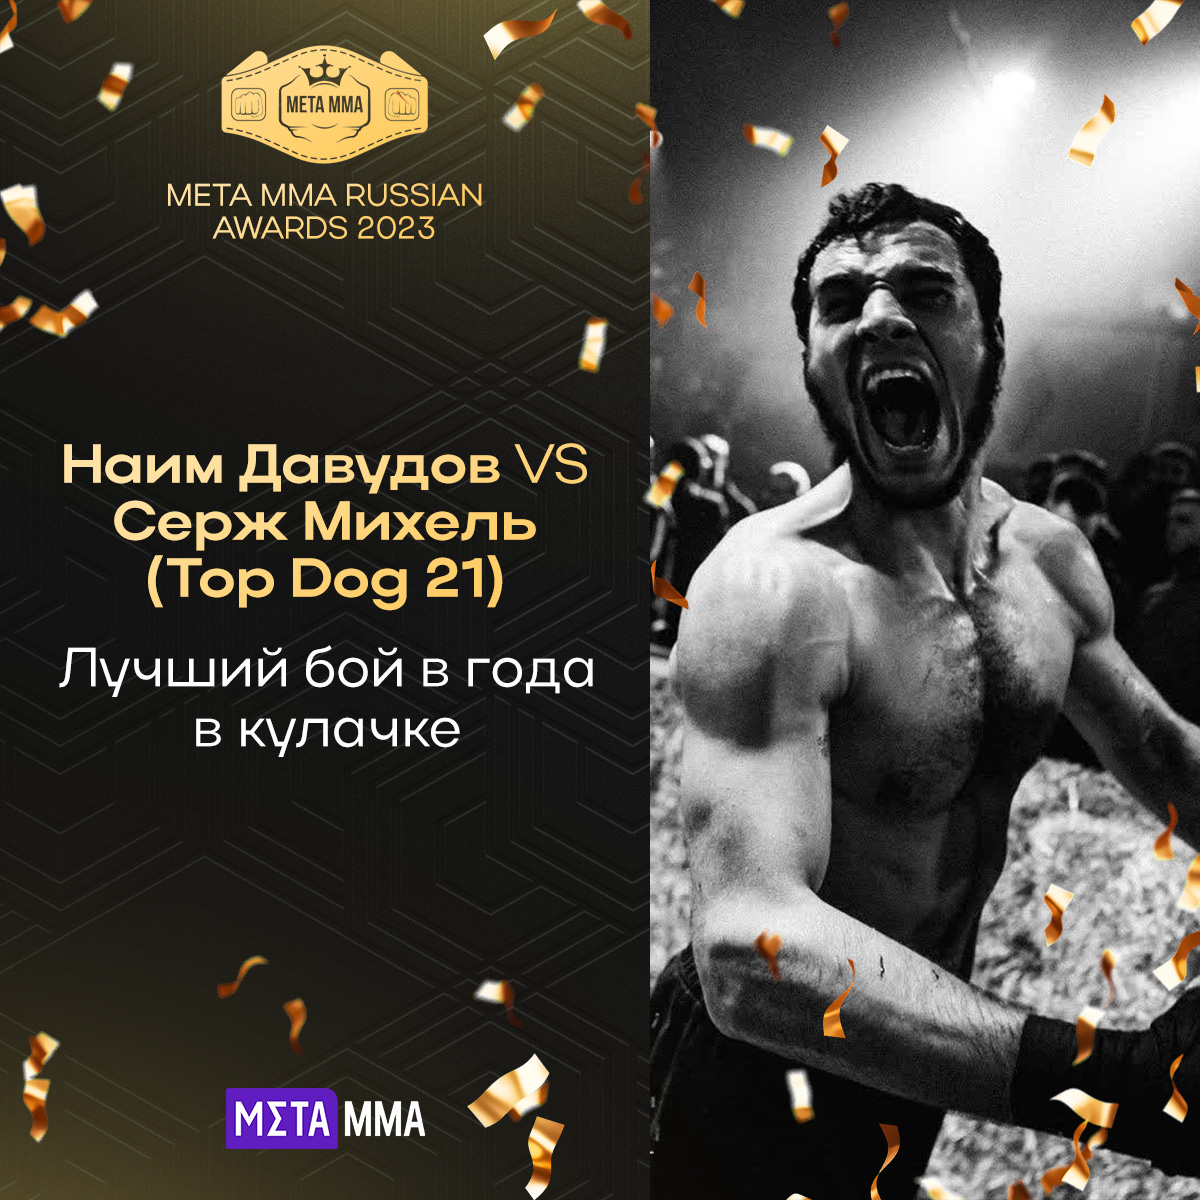 Лучший бой года в кулачном спорте по версии MMA.Metaratings.ru: Наим Давудов против Сержа Михеля